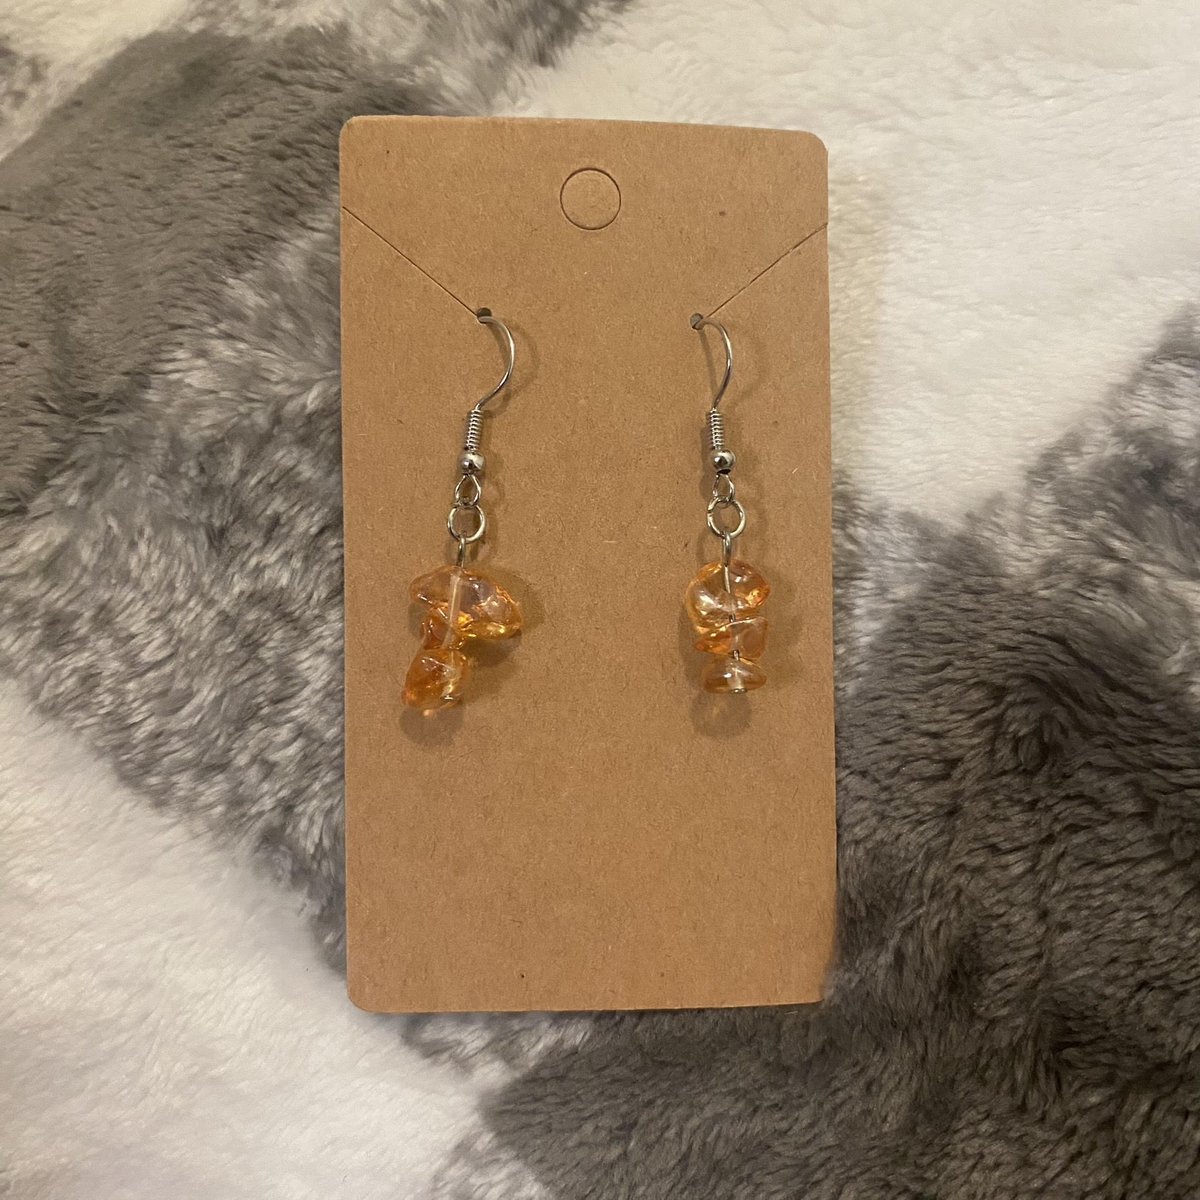 Orange Faux Stone Stacked Dangle Earrings

aldesignsbyashley.etsy.com

#etsyshop #etsyseller #etsyhandmade #etsy #handmade #handmadejewelry #handmadeearrings #earrings #handmadeearringsforsale #earringstyle #etsygifts #etsysellersofinstagram #jewelry #jewelrydesign